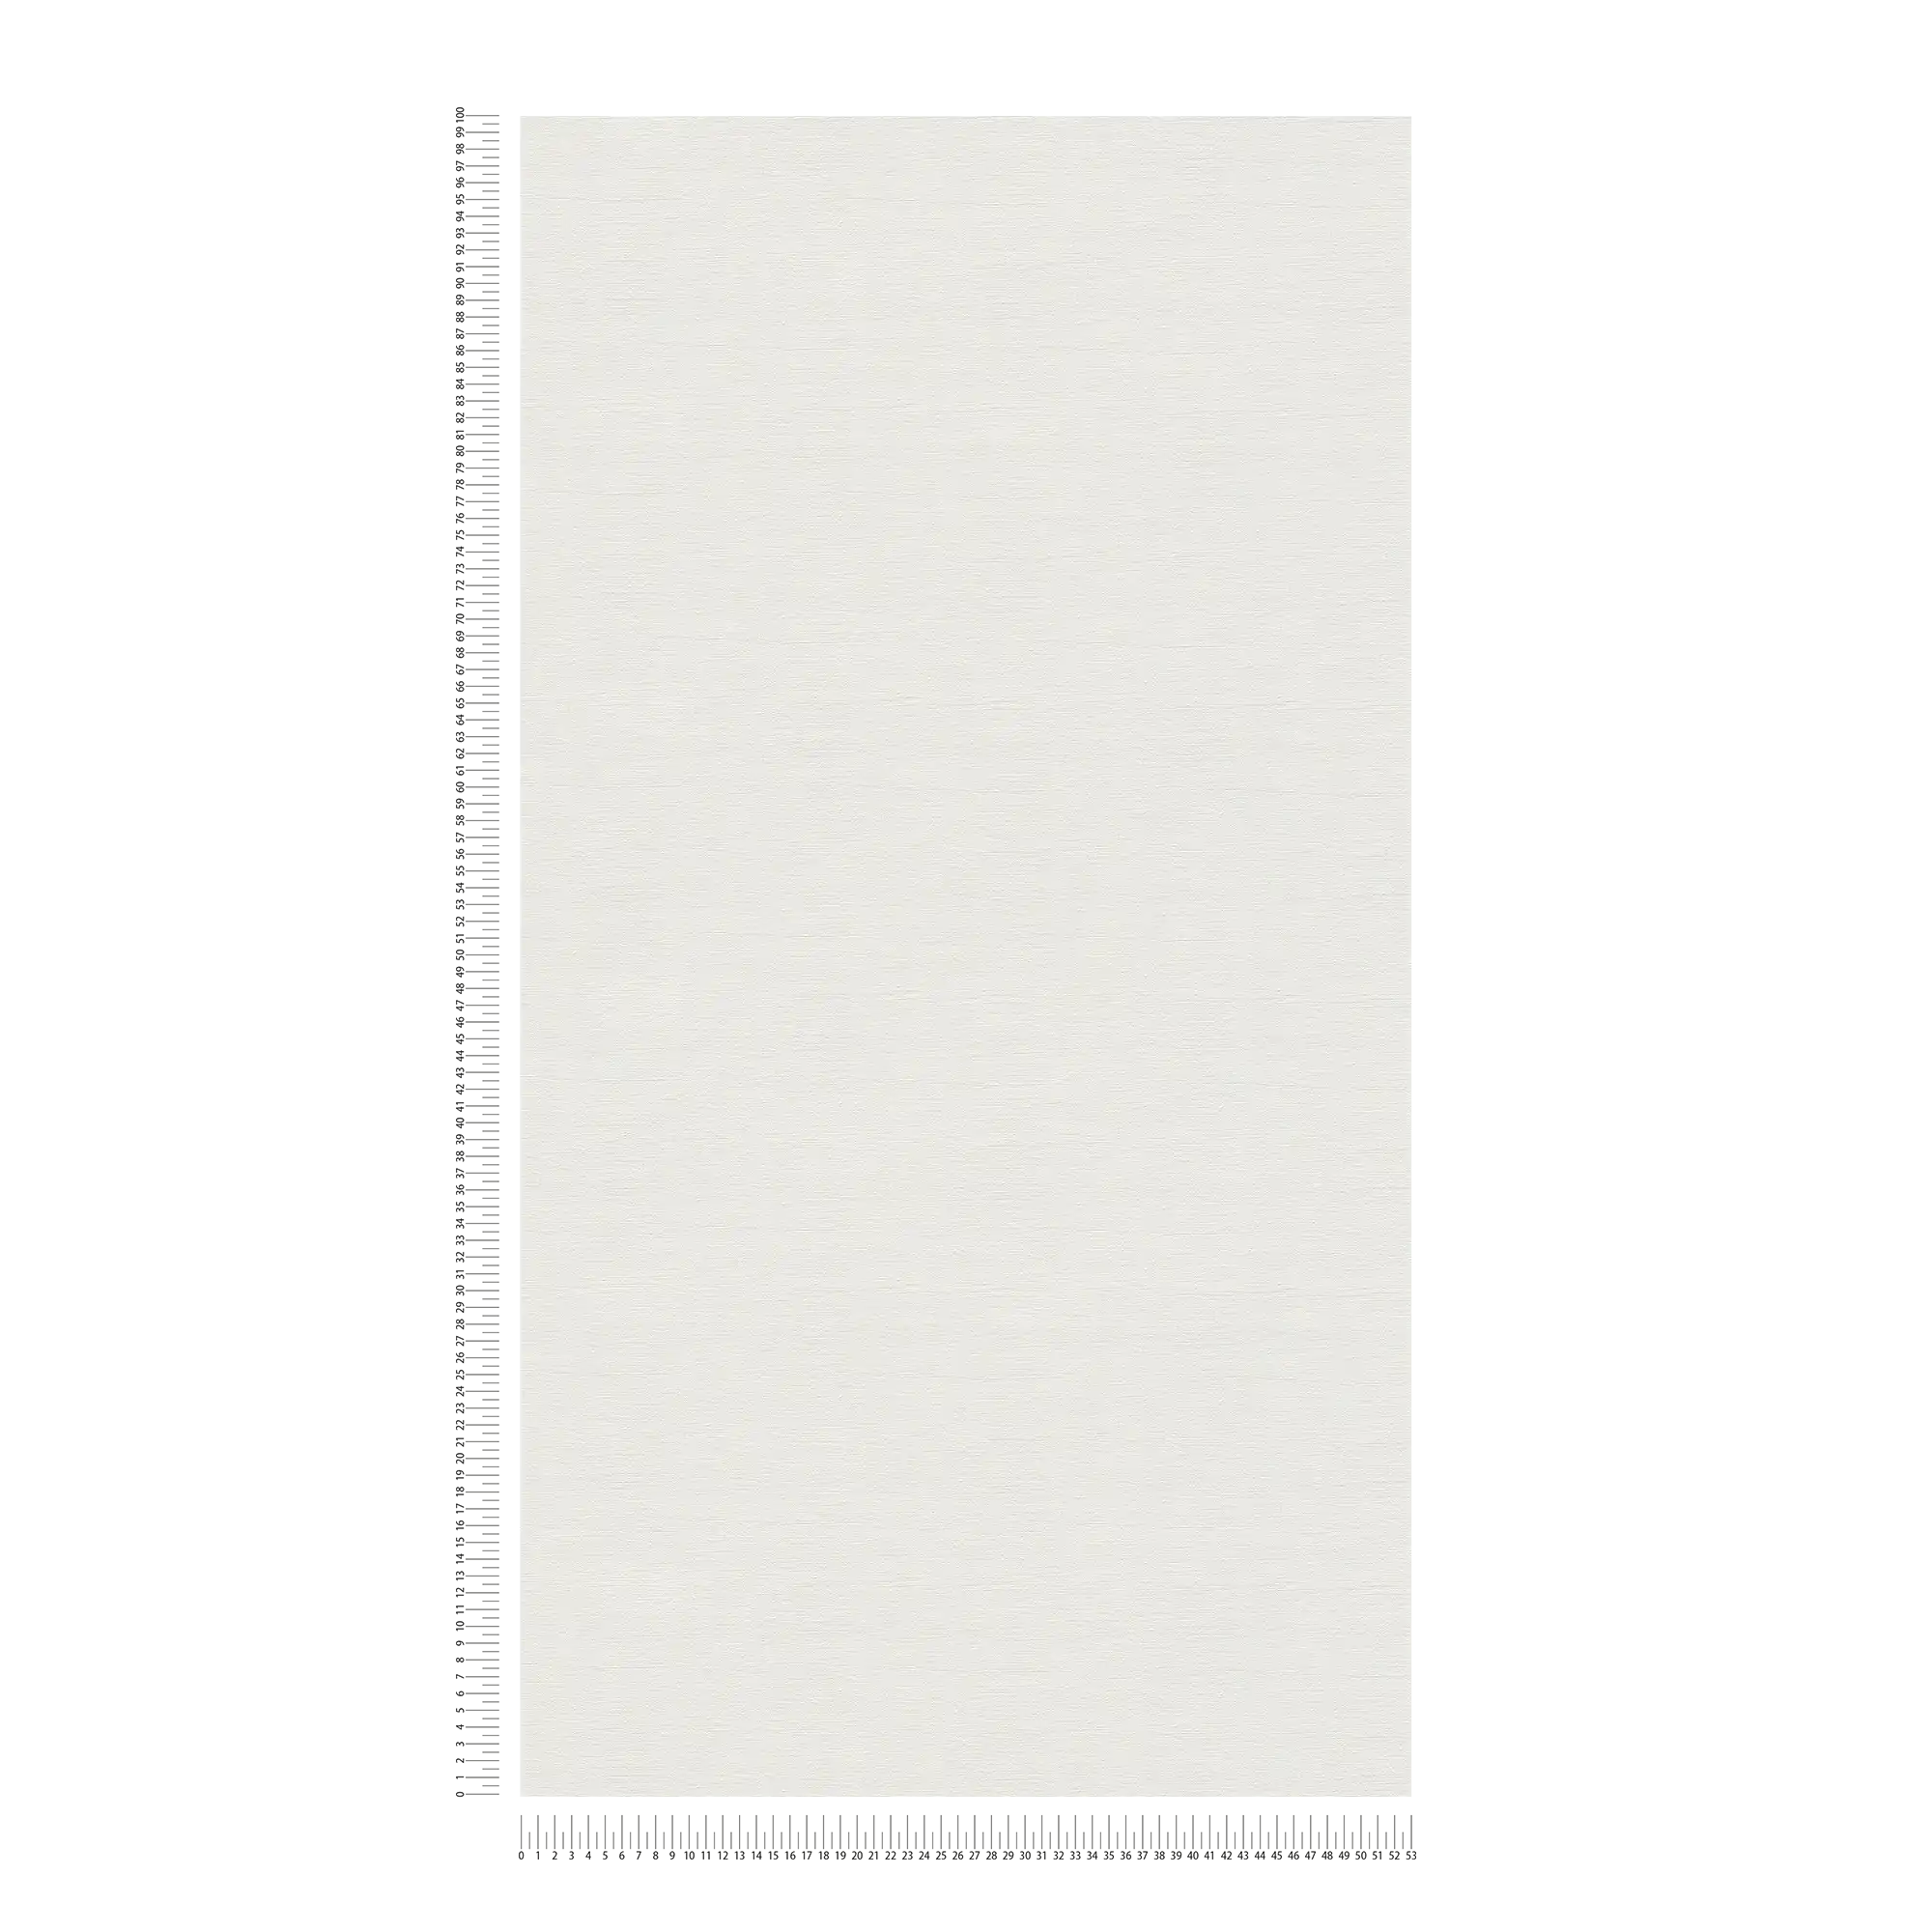             Papier peint uni légèrement structuré - crème, gris clair
        